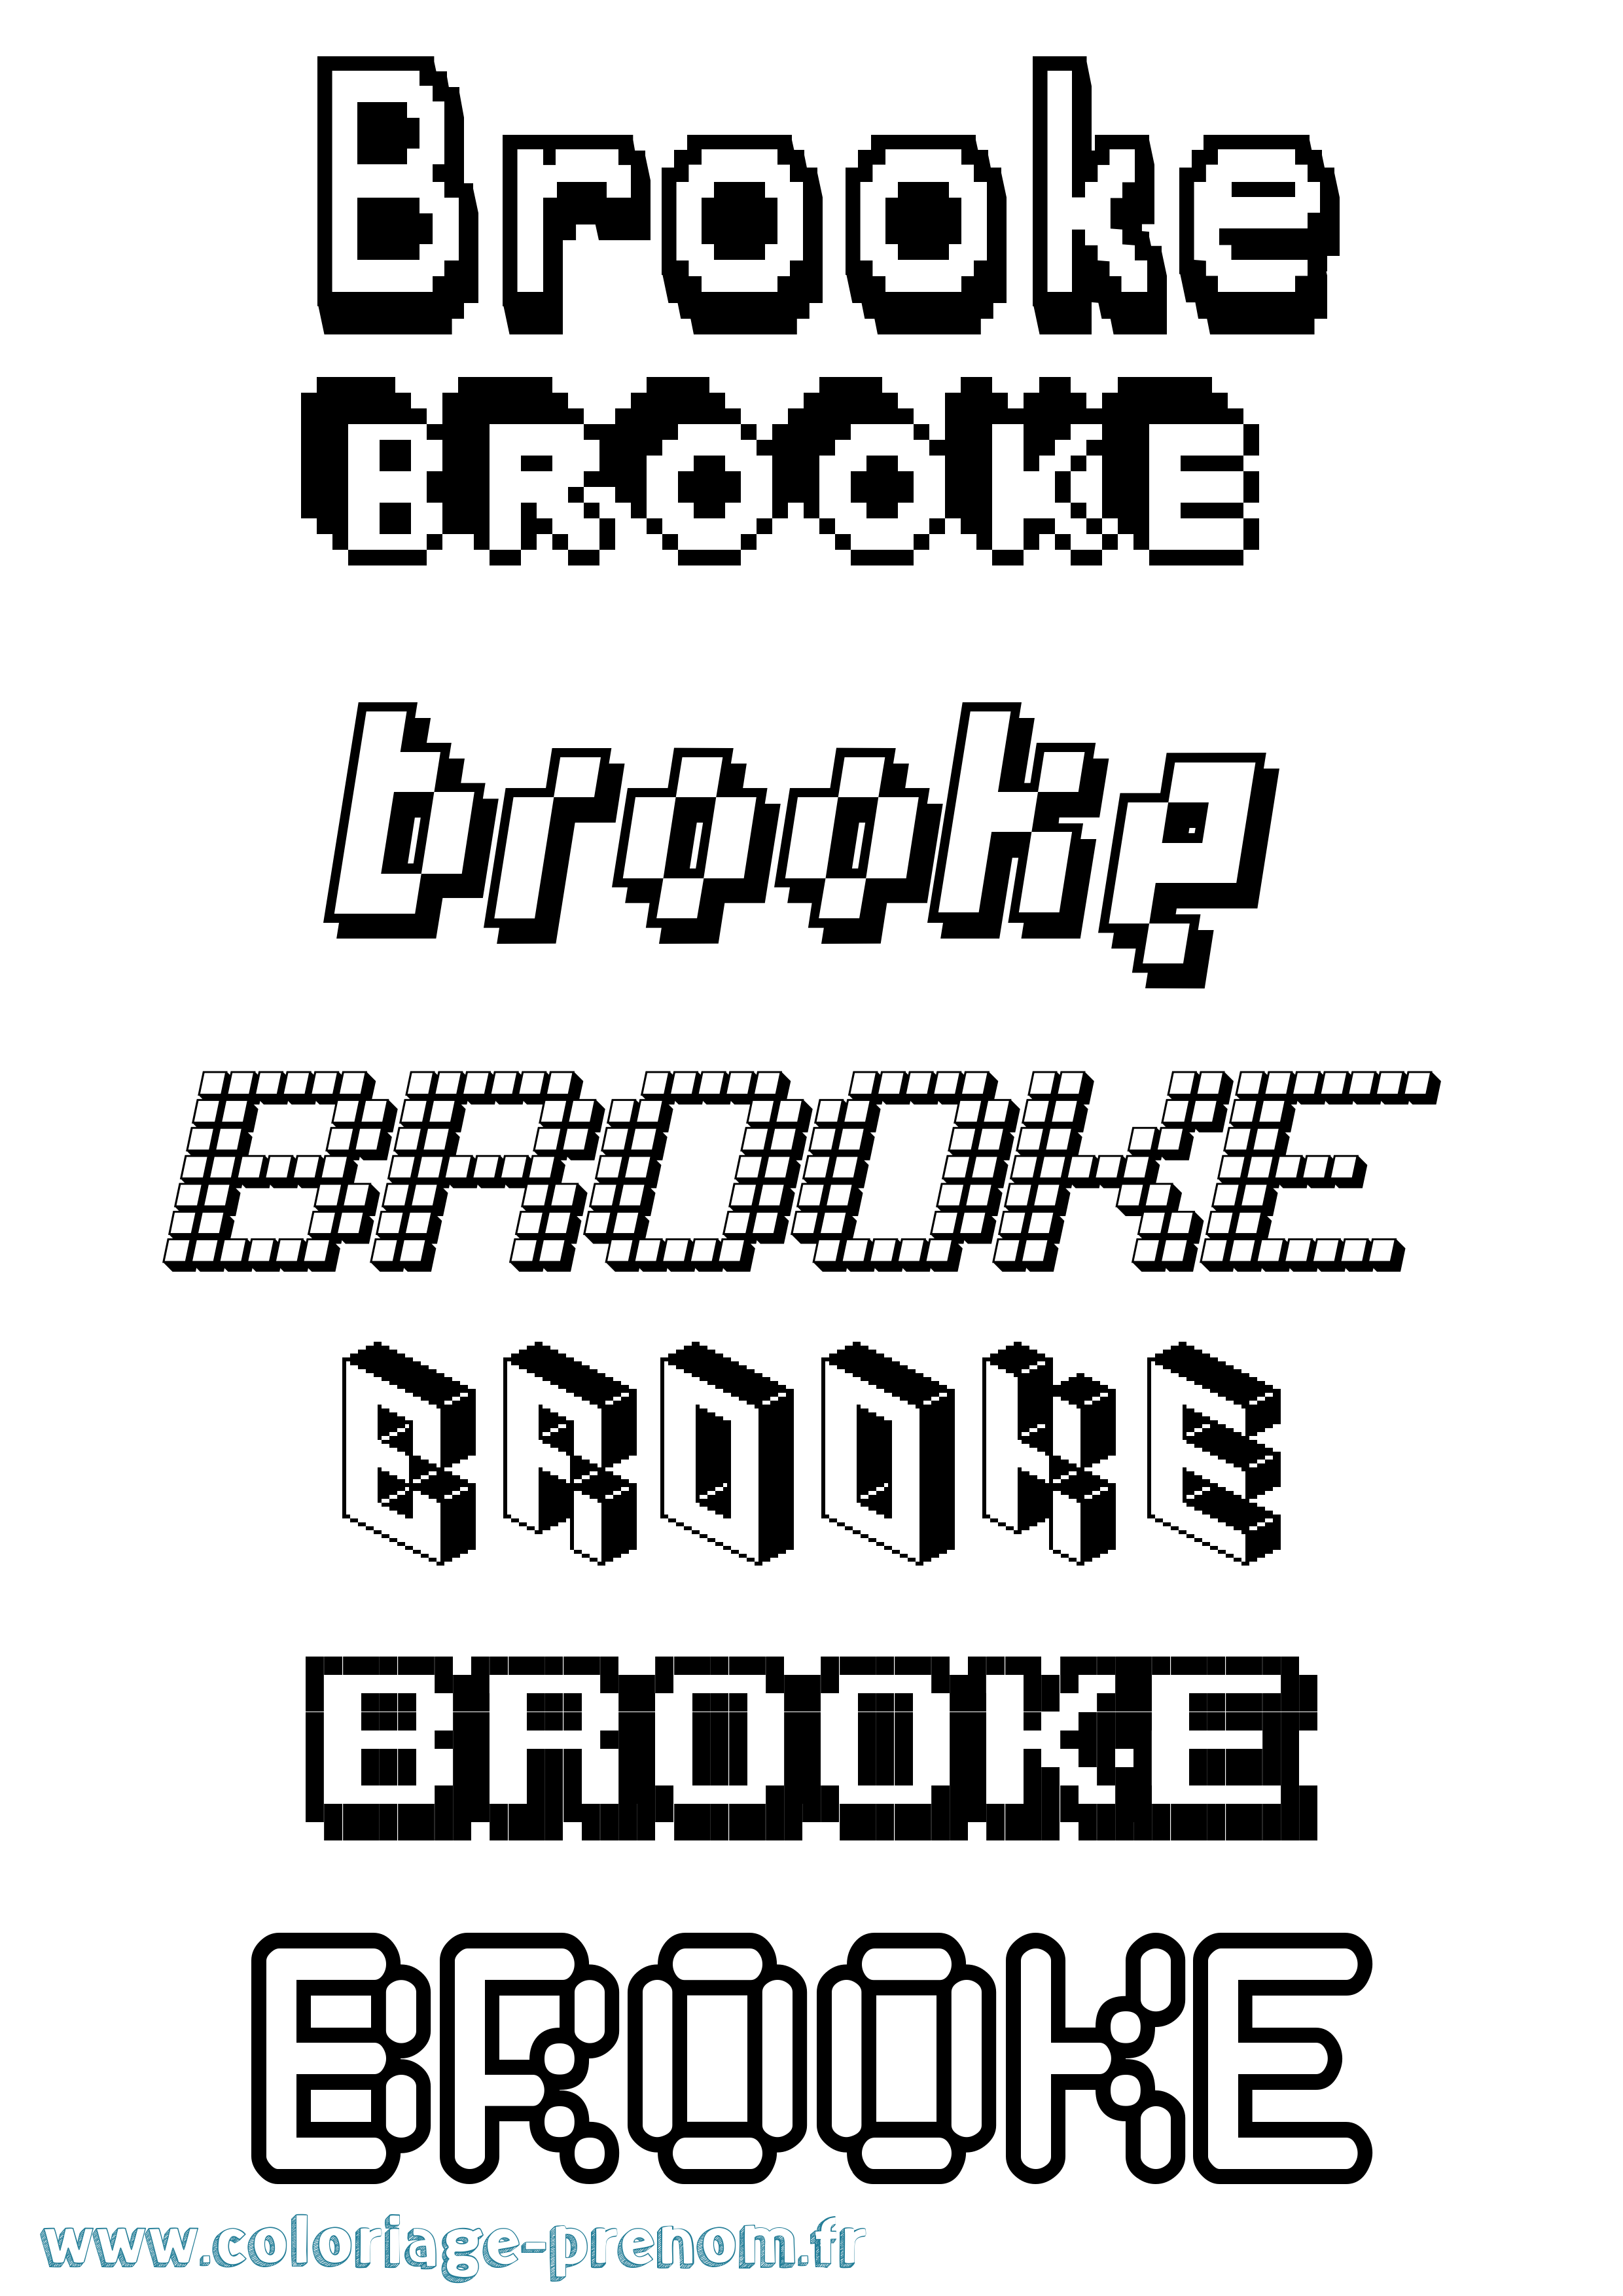 Coloriage prénom Brooke Pixel